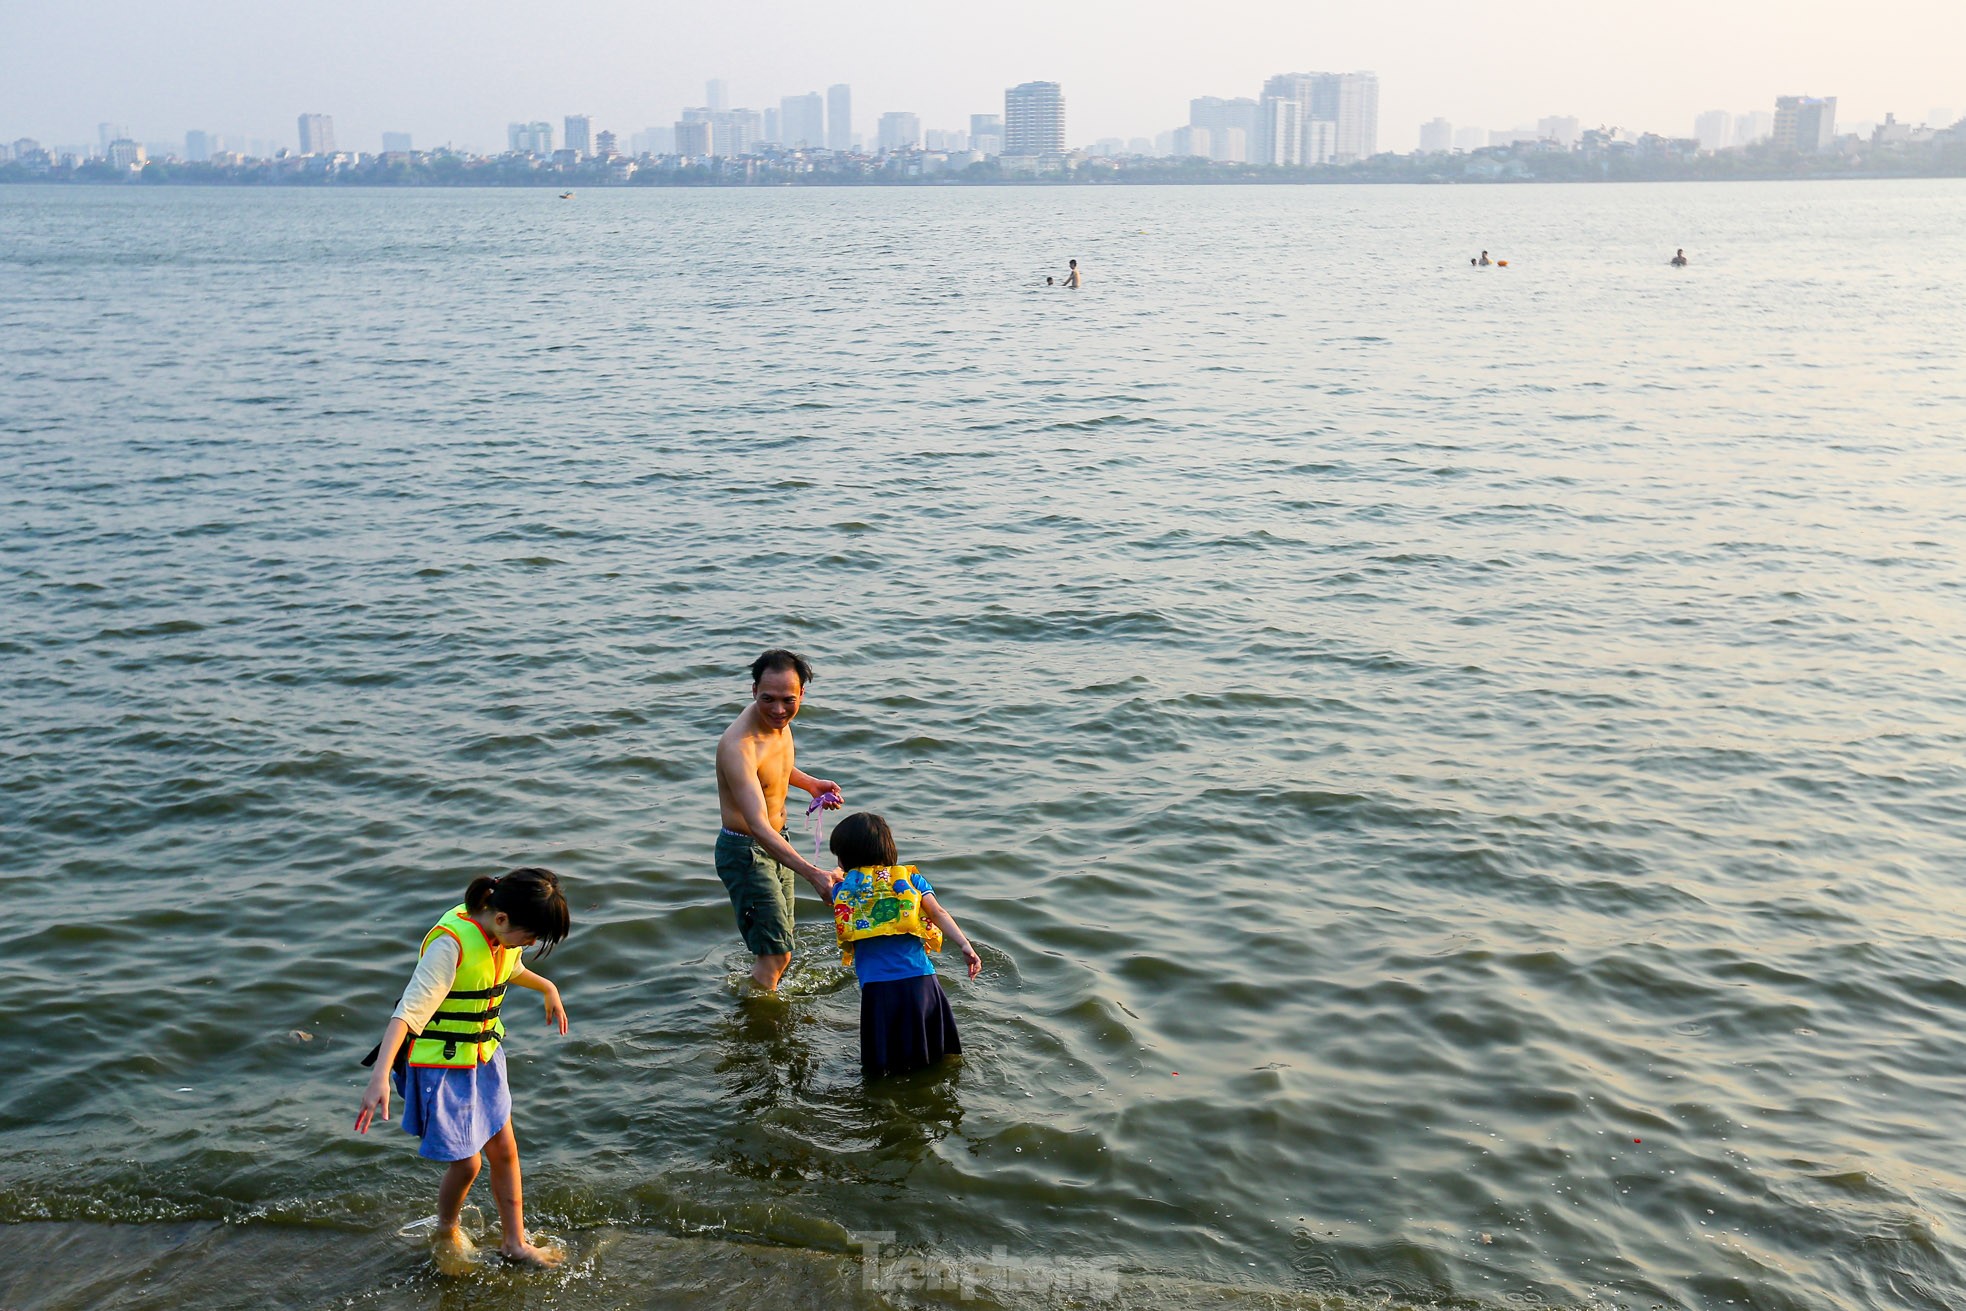 Nắng nóng oi bức, người Hà Nội 'biến' hồ Tây thành bể bơi giải nhiệt bất chấp lệnh cấm - Ảnh 5.